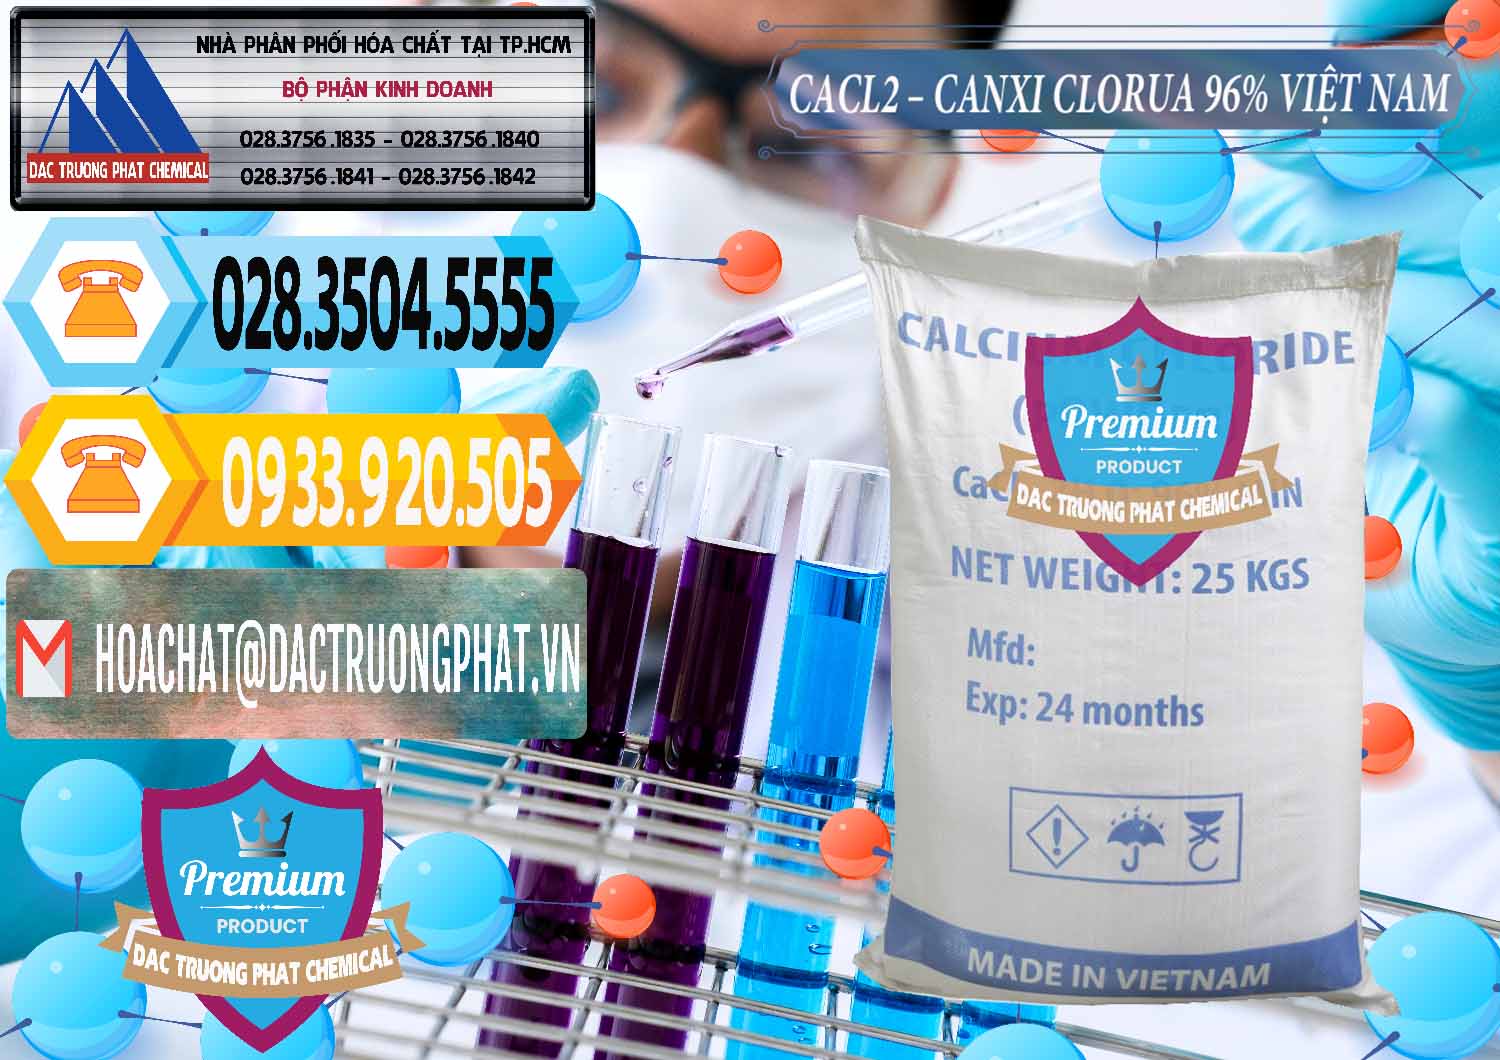 Chuyên cung cấp - bán CaCl2 – Canxi Clorua 96% Việt Nam - 0236 - Cty bán & cung ứng hóa chất tại TP.HCM - hoachattayrua.net